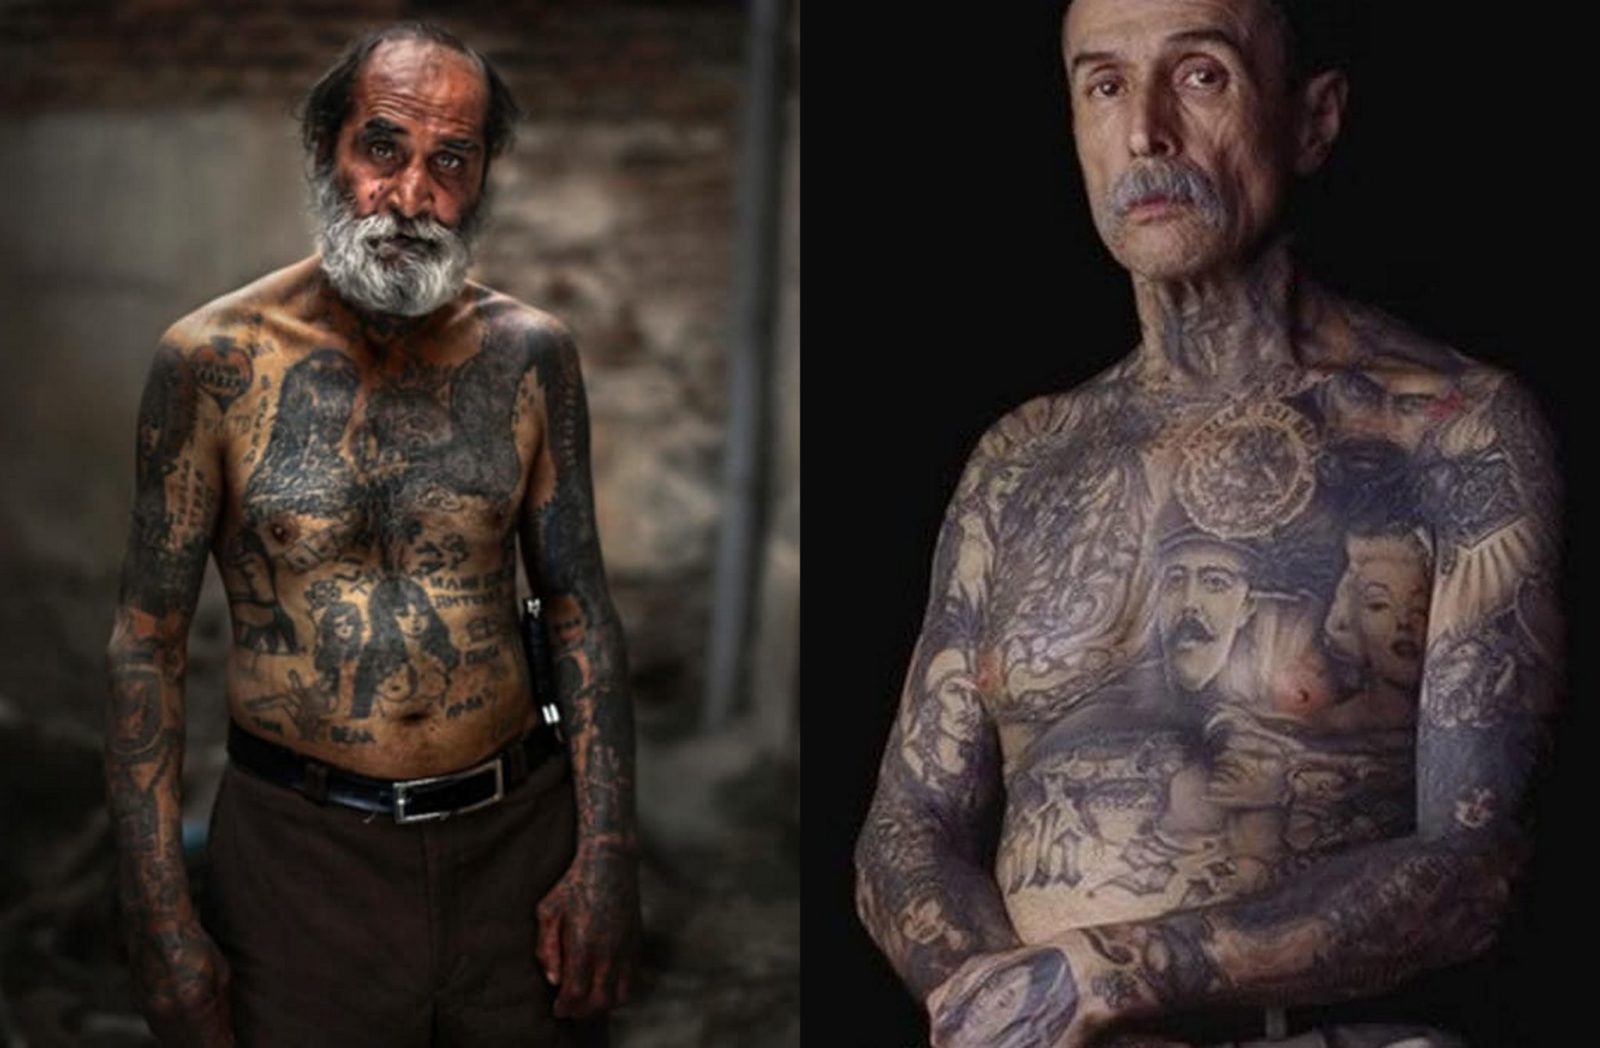 Starszy mężczyzna z siwą brodą cały w tatuażach i Starszy mężczyzna z wytatuowaną klatką piersiową i szyją